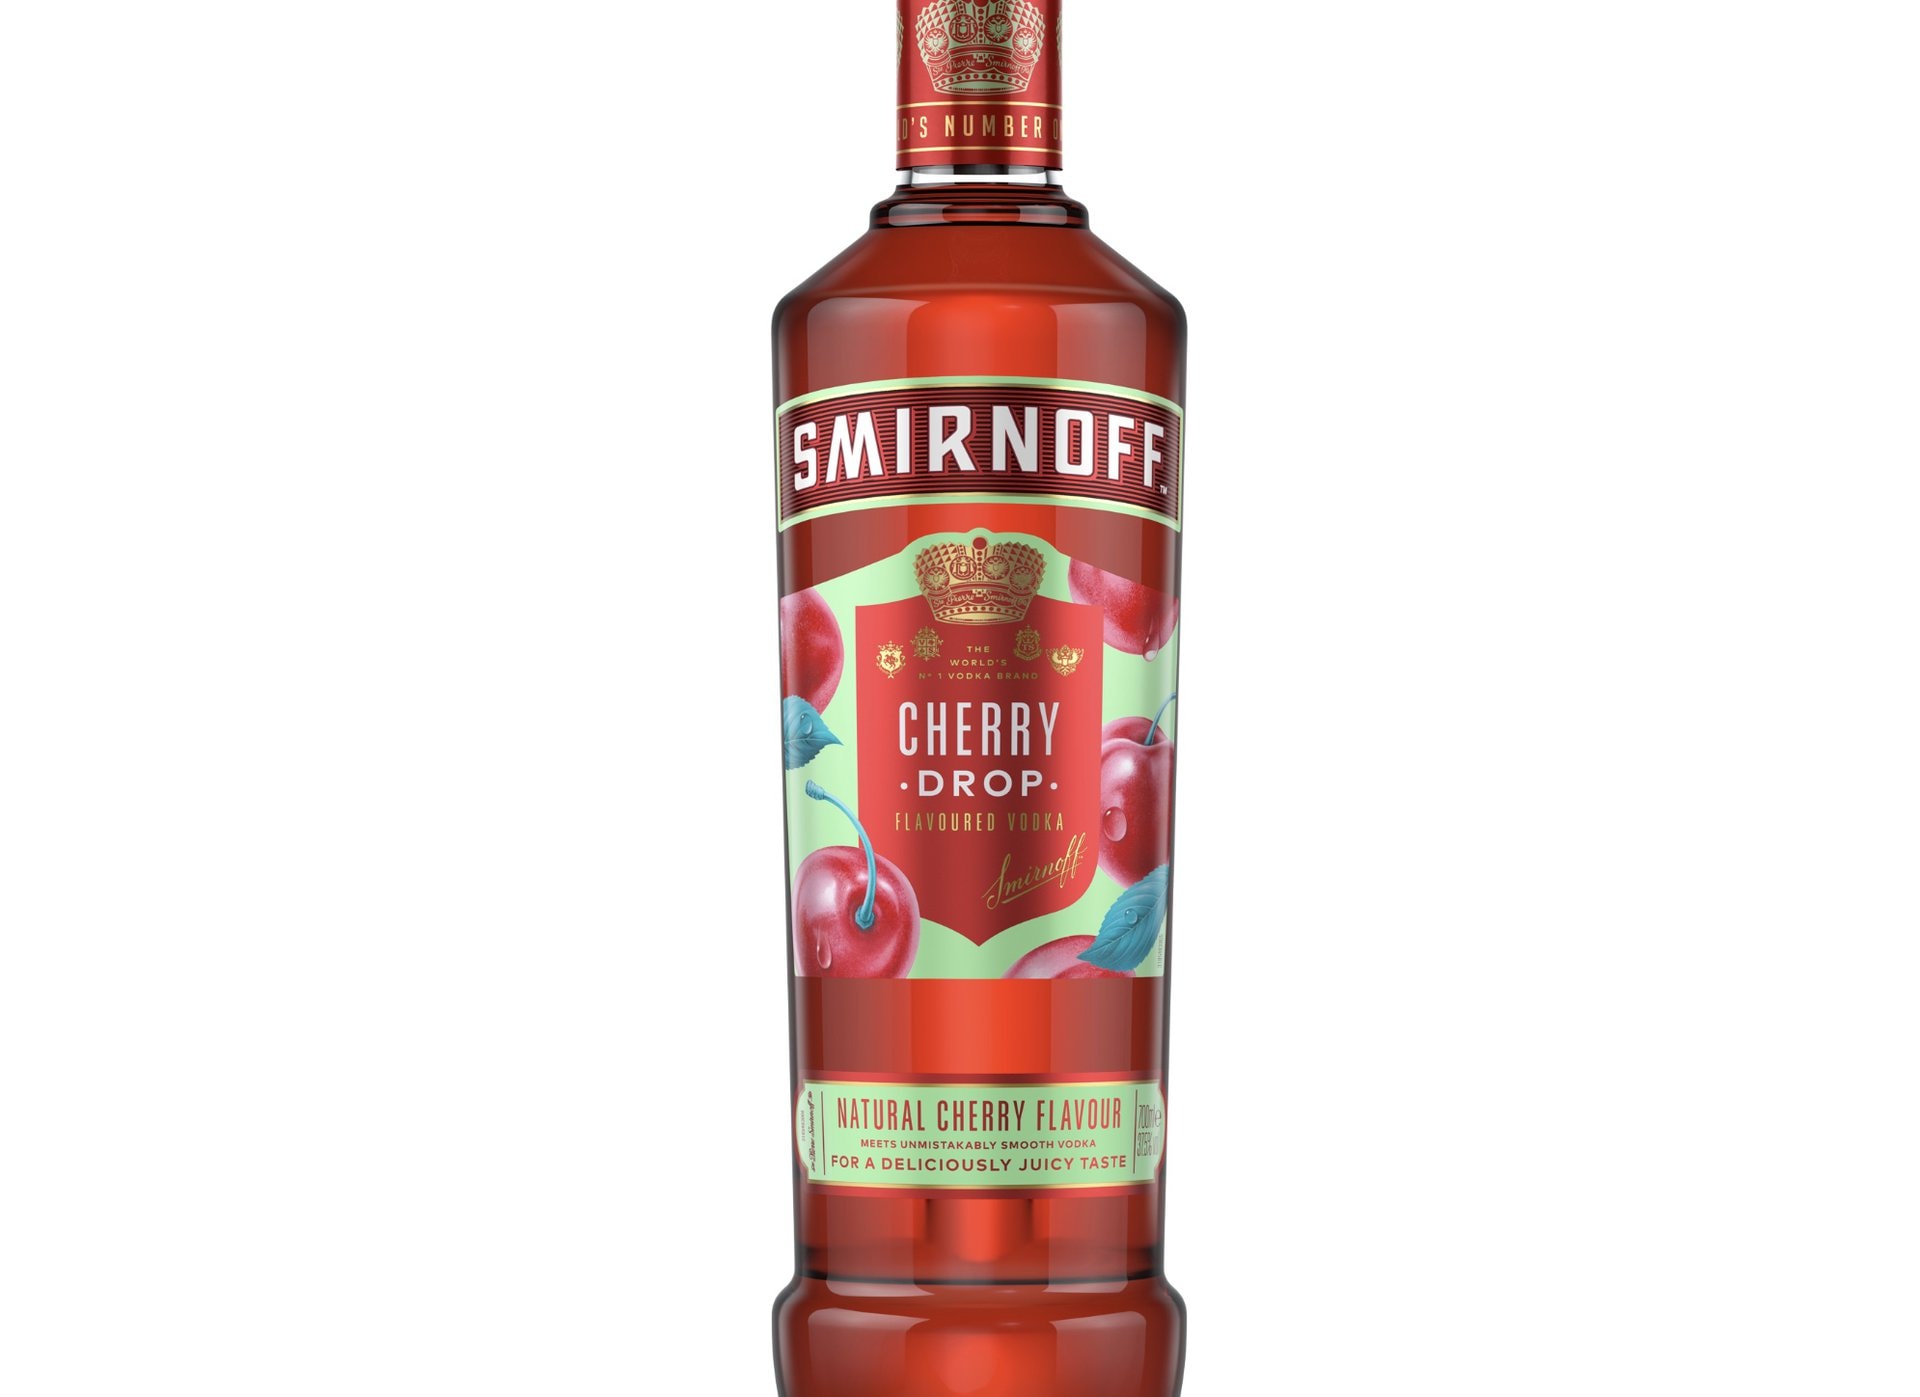 Smirnoff drops new Cherry flavoured vodka